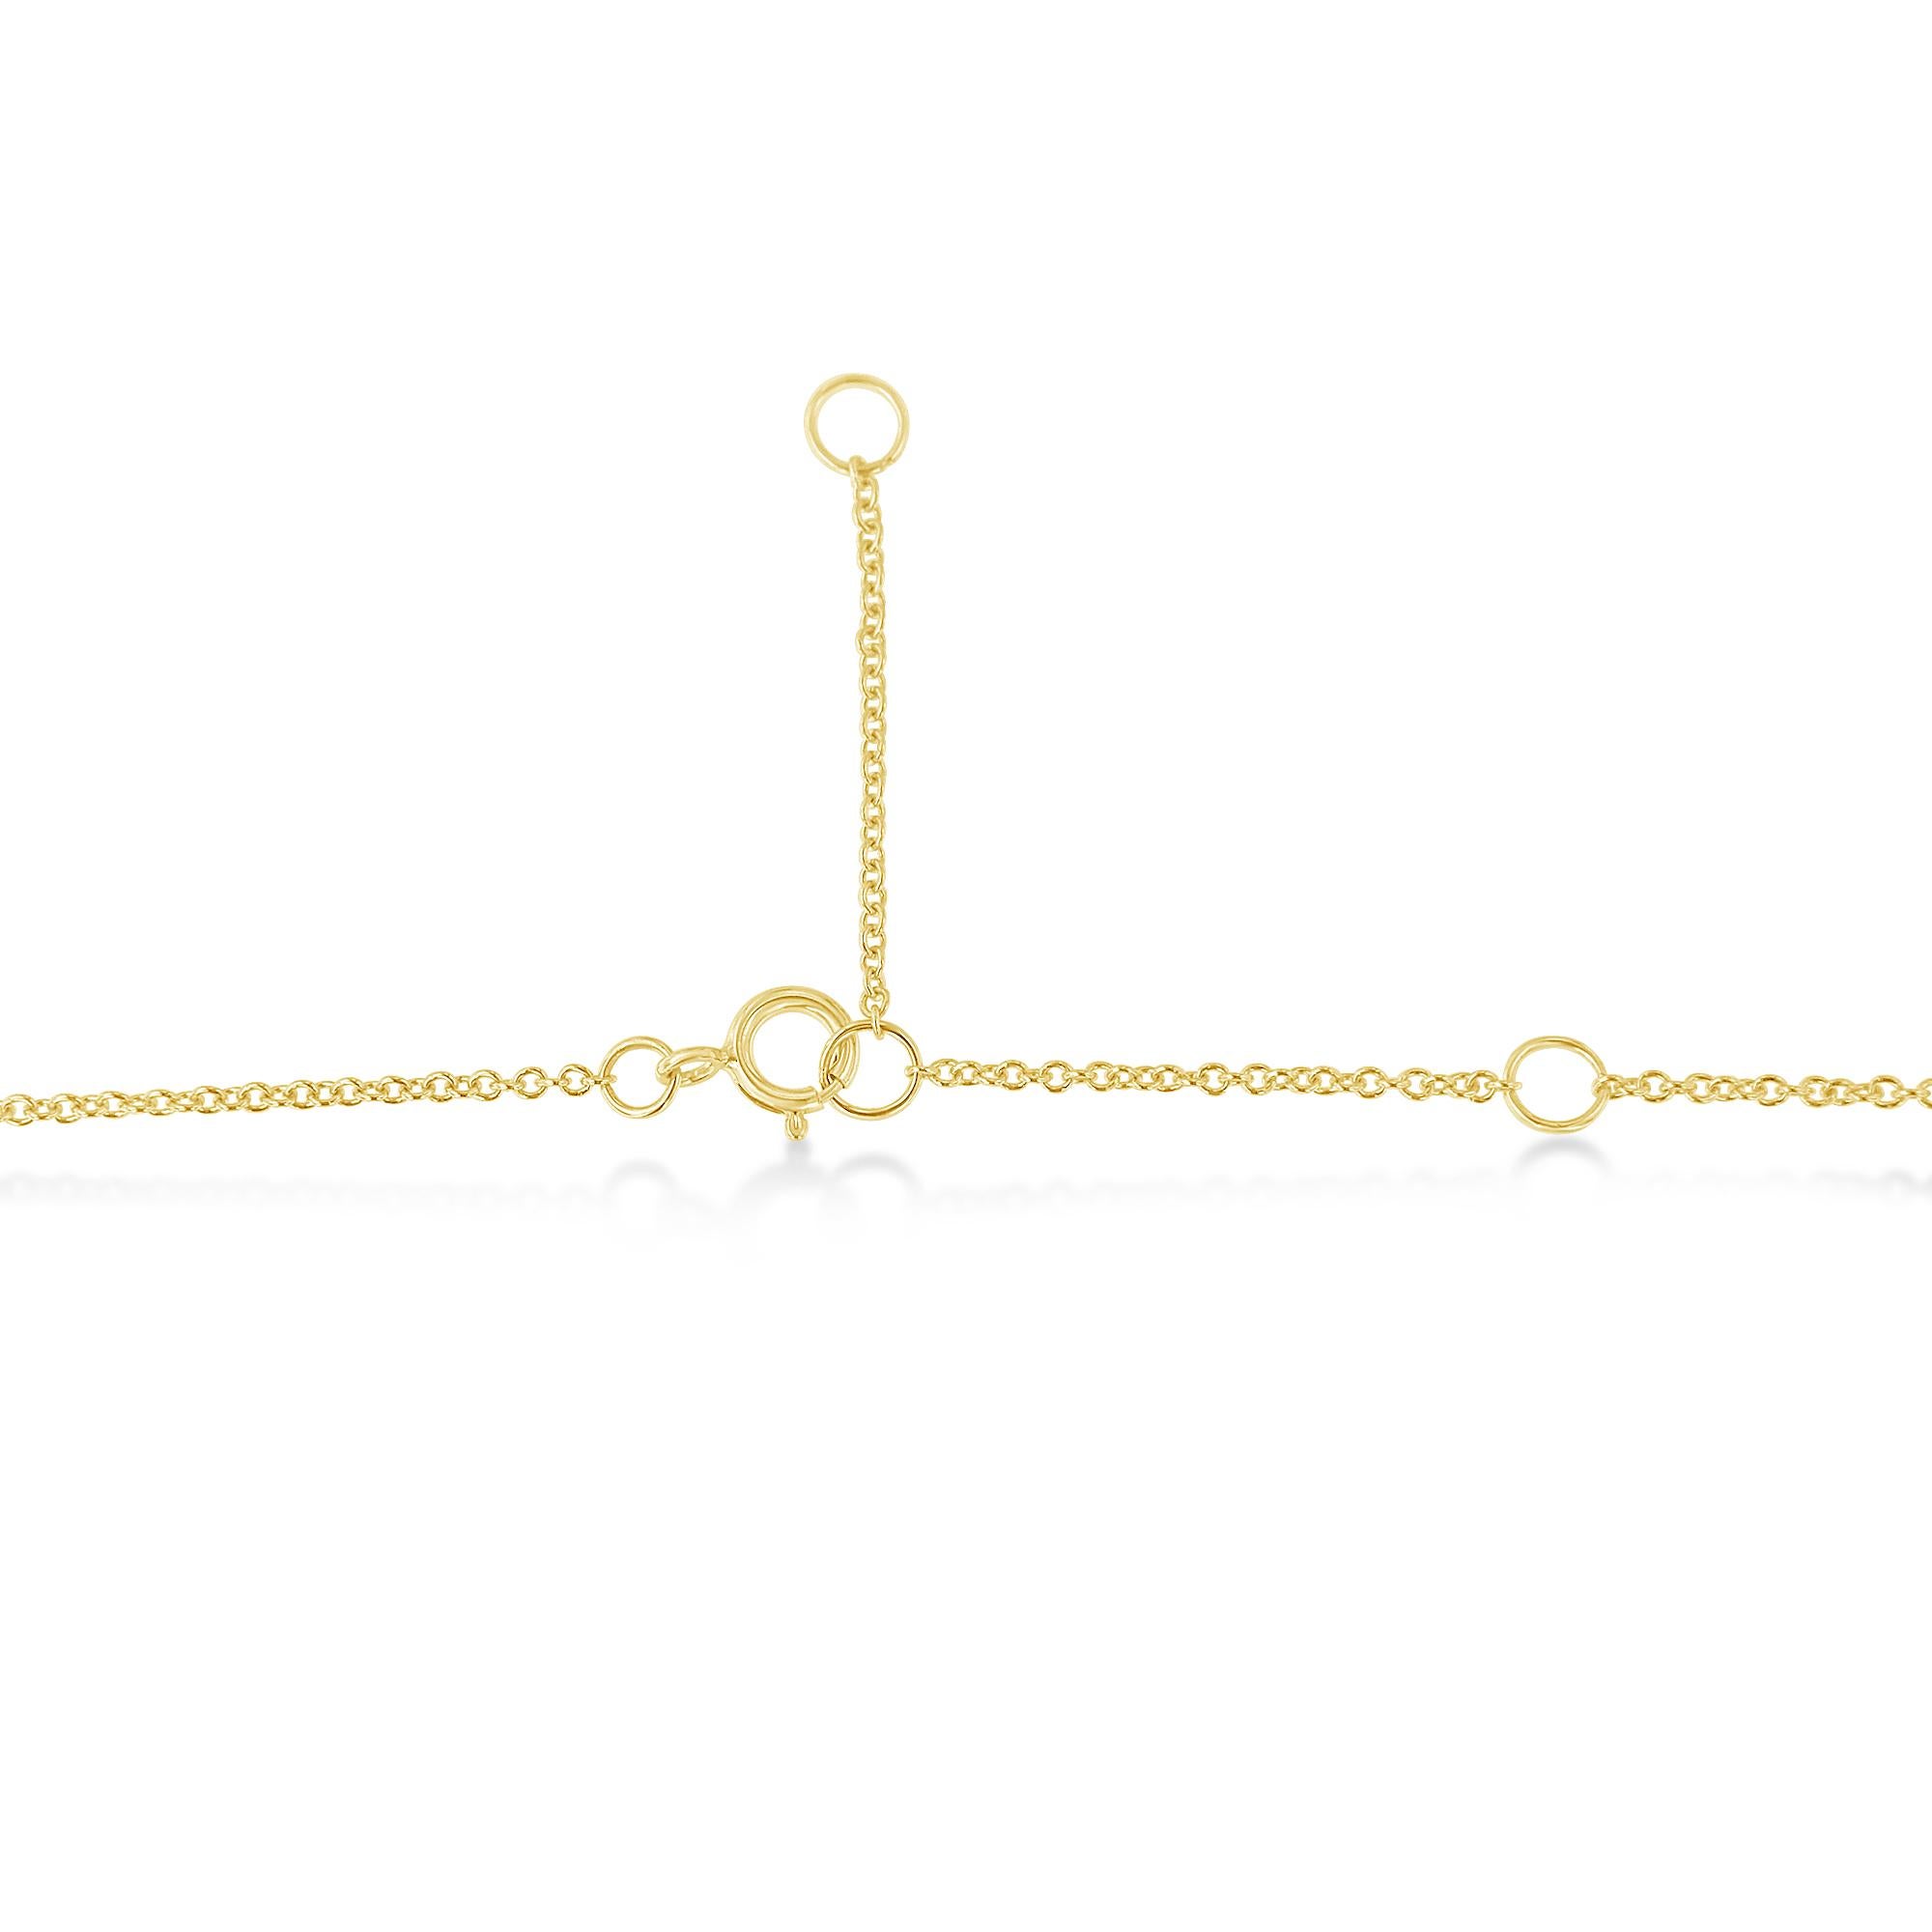 Round Cut 10k Yellow Gold 3/10 Carat Diamond Bezel-Set Solitaire Pendant Necklace